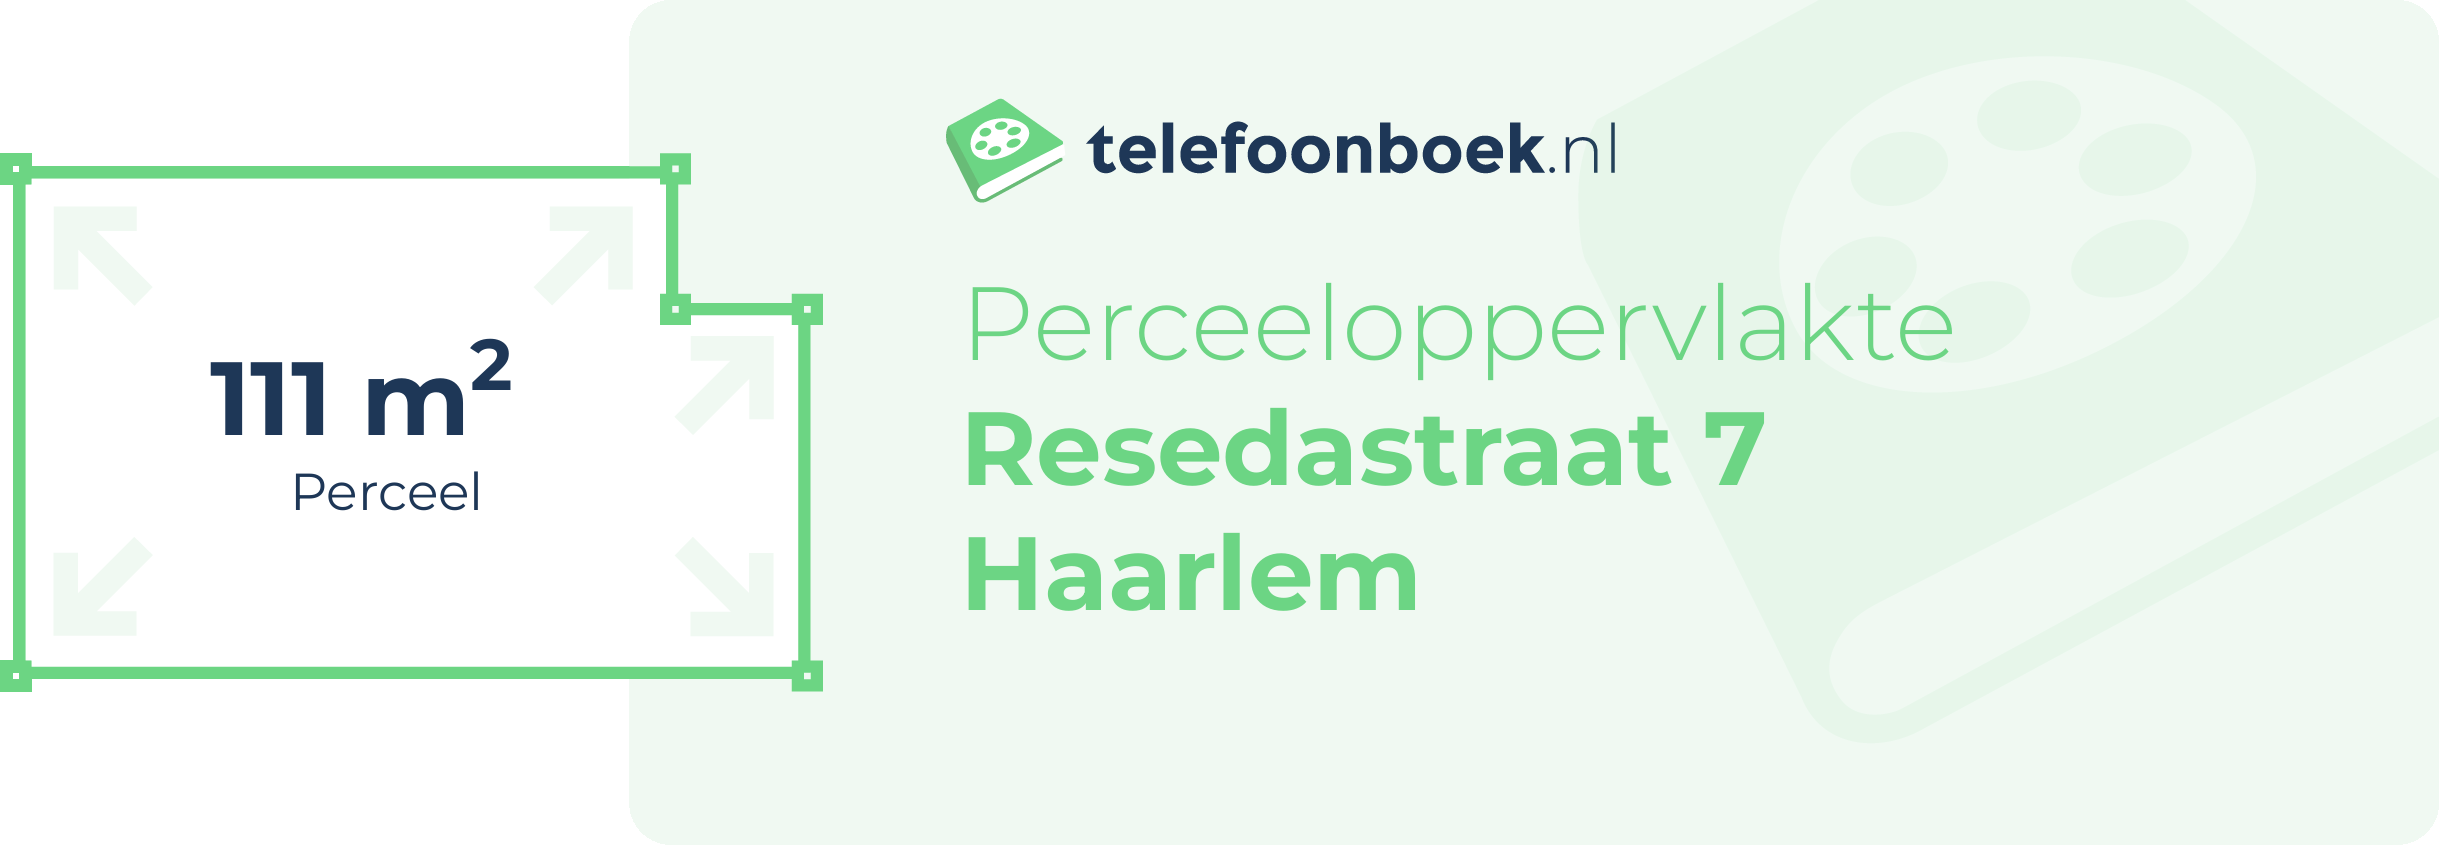 Perceeloppervlakte Resedastraat 7 Haarlem